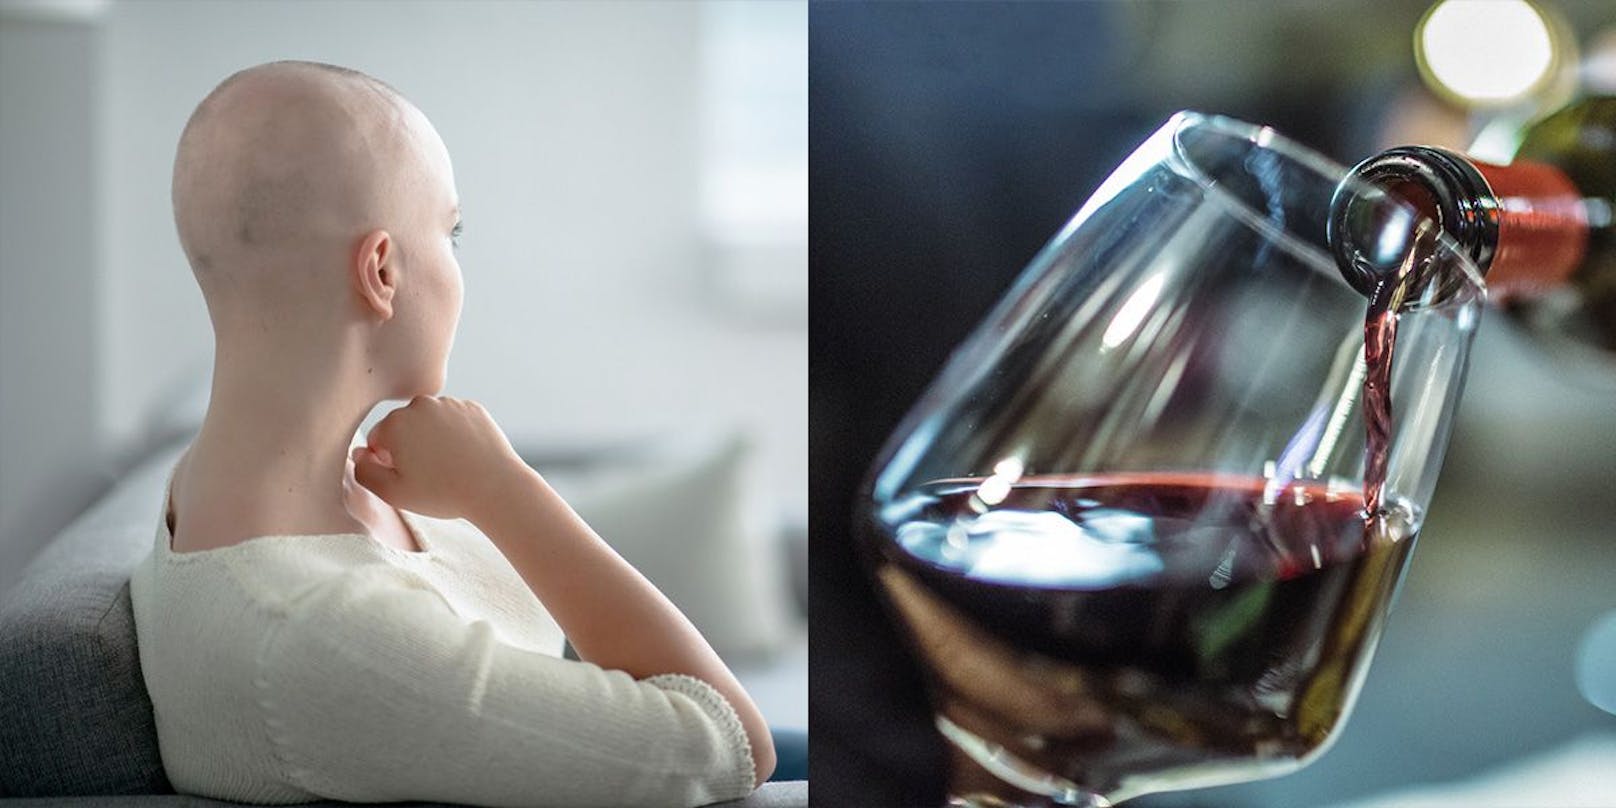 Viele Krebspatienten greifen zum Alkohol, um mit dem körperlichen Leid und den psychischen Problemen umgehen zu können.